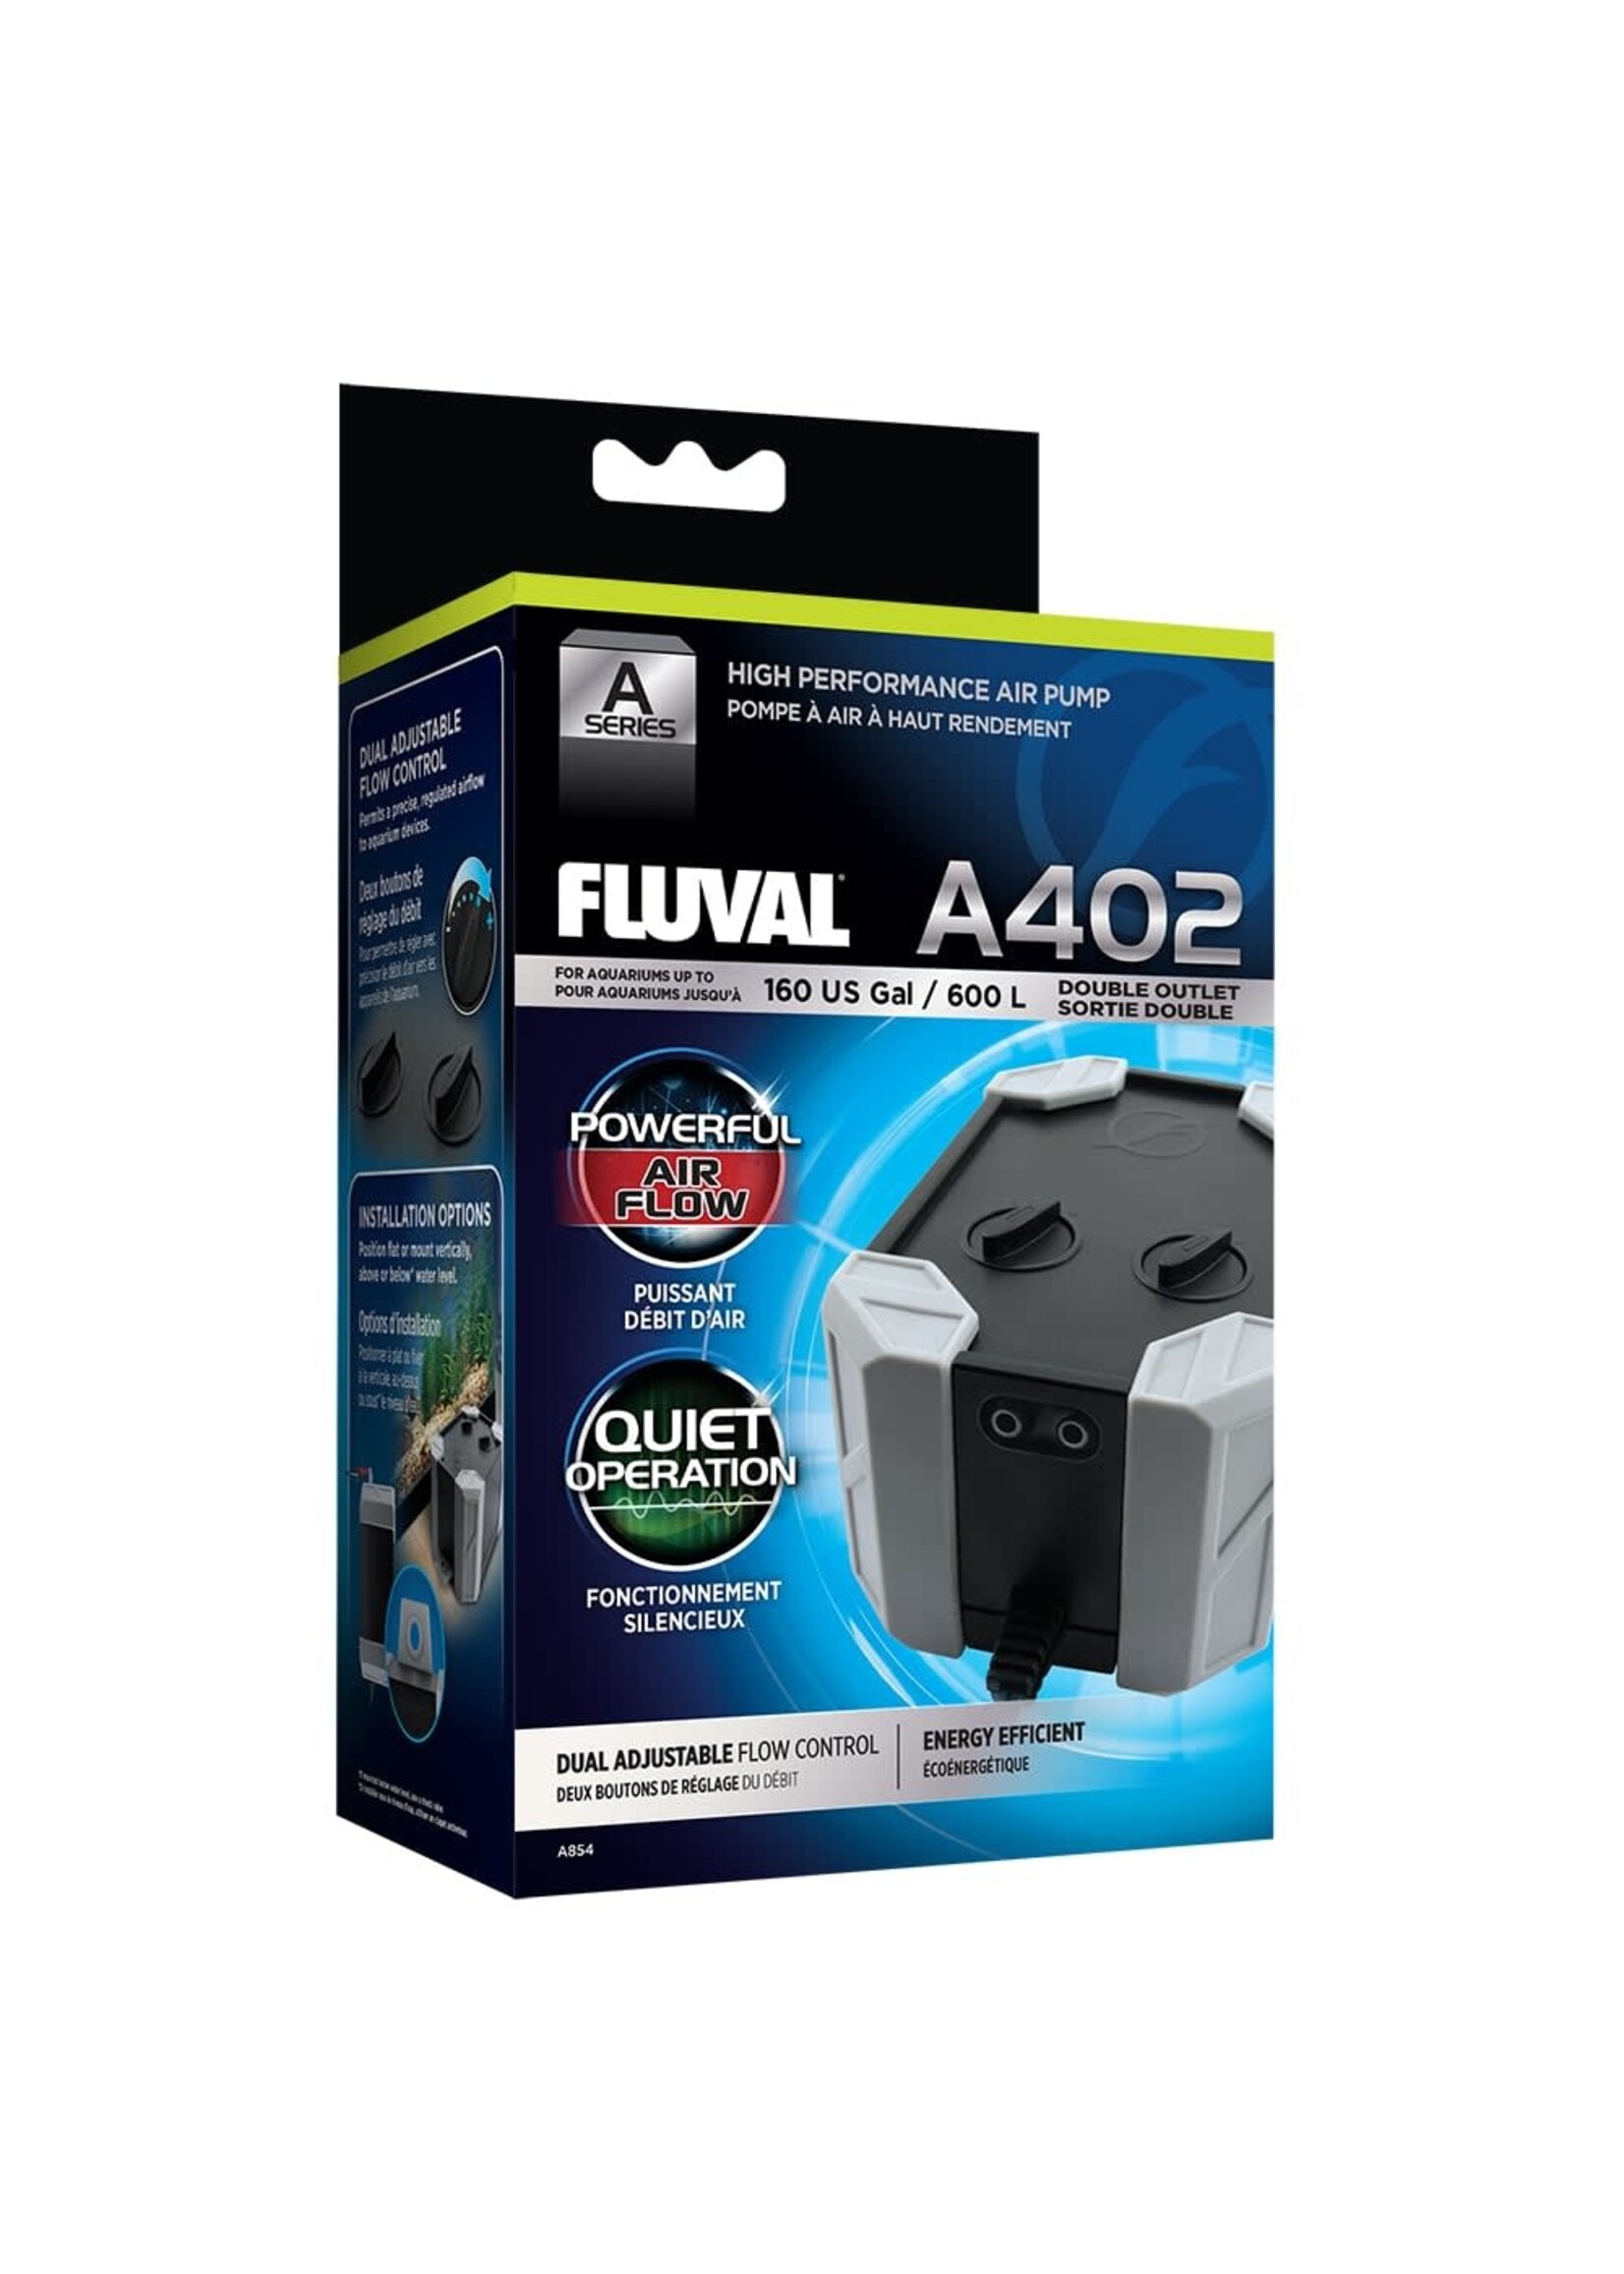 Fluval AIR PUMP A402